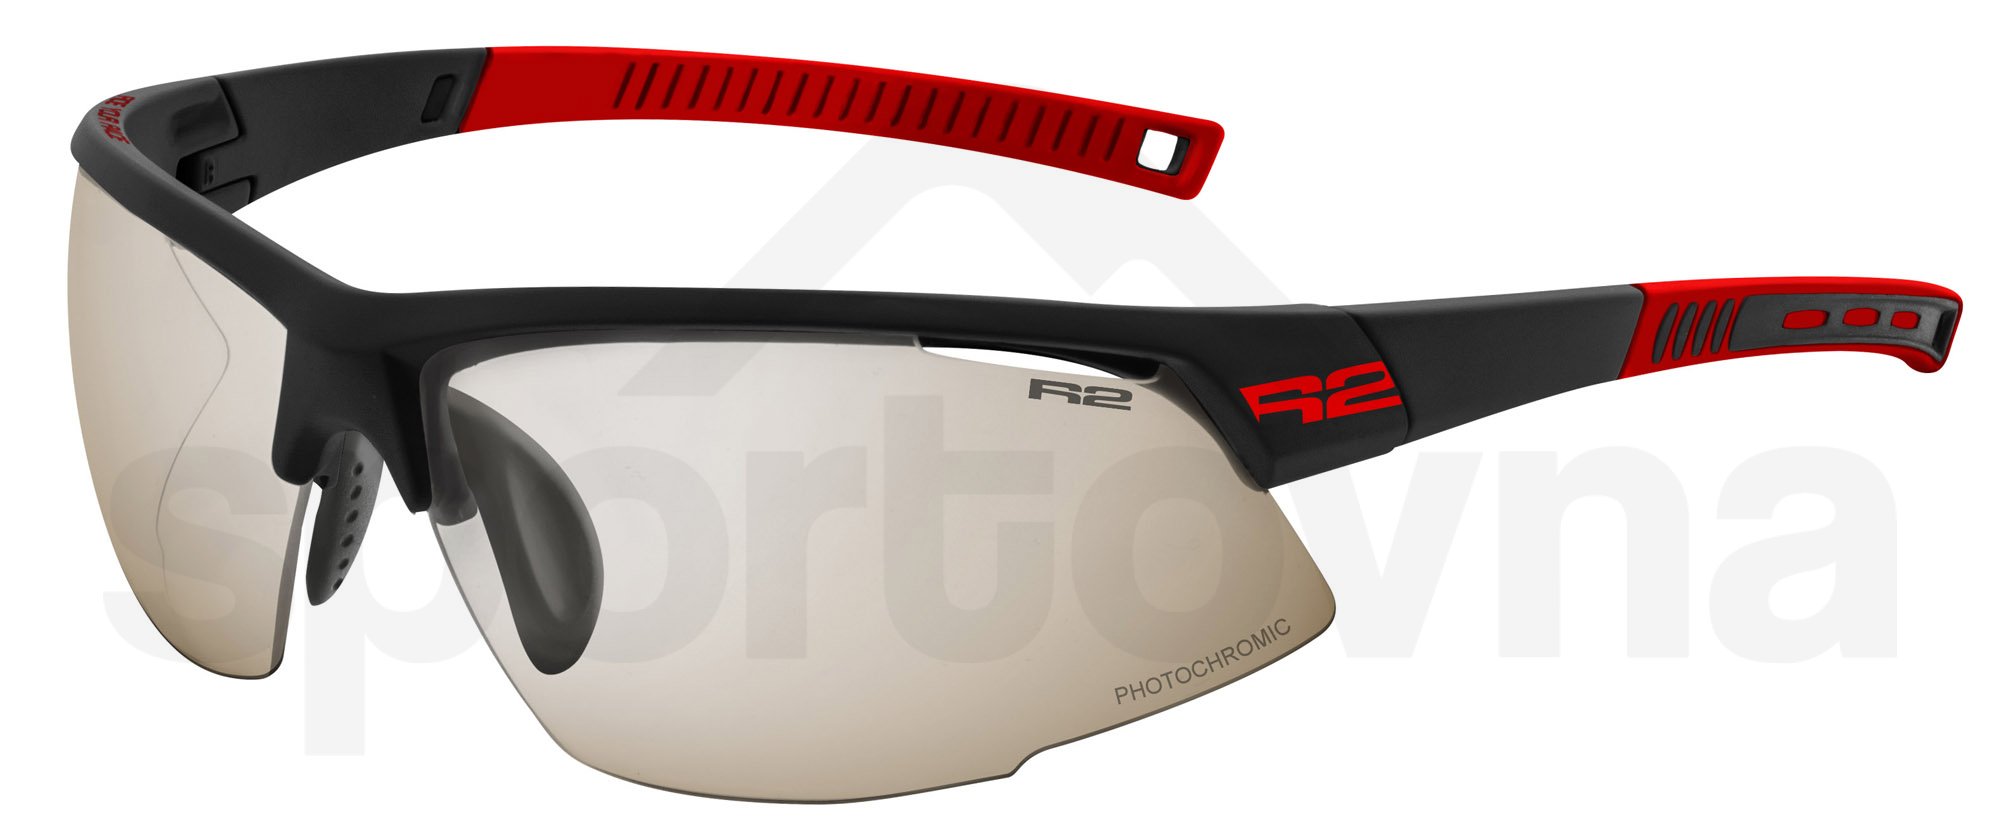 Sportovní brýle R2 Racer - černá/červená